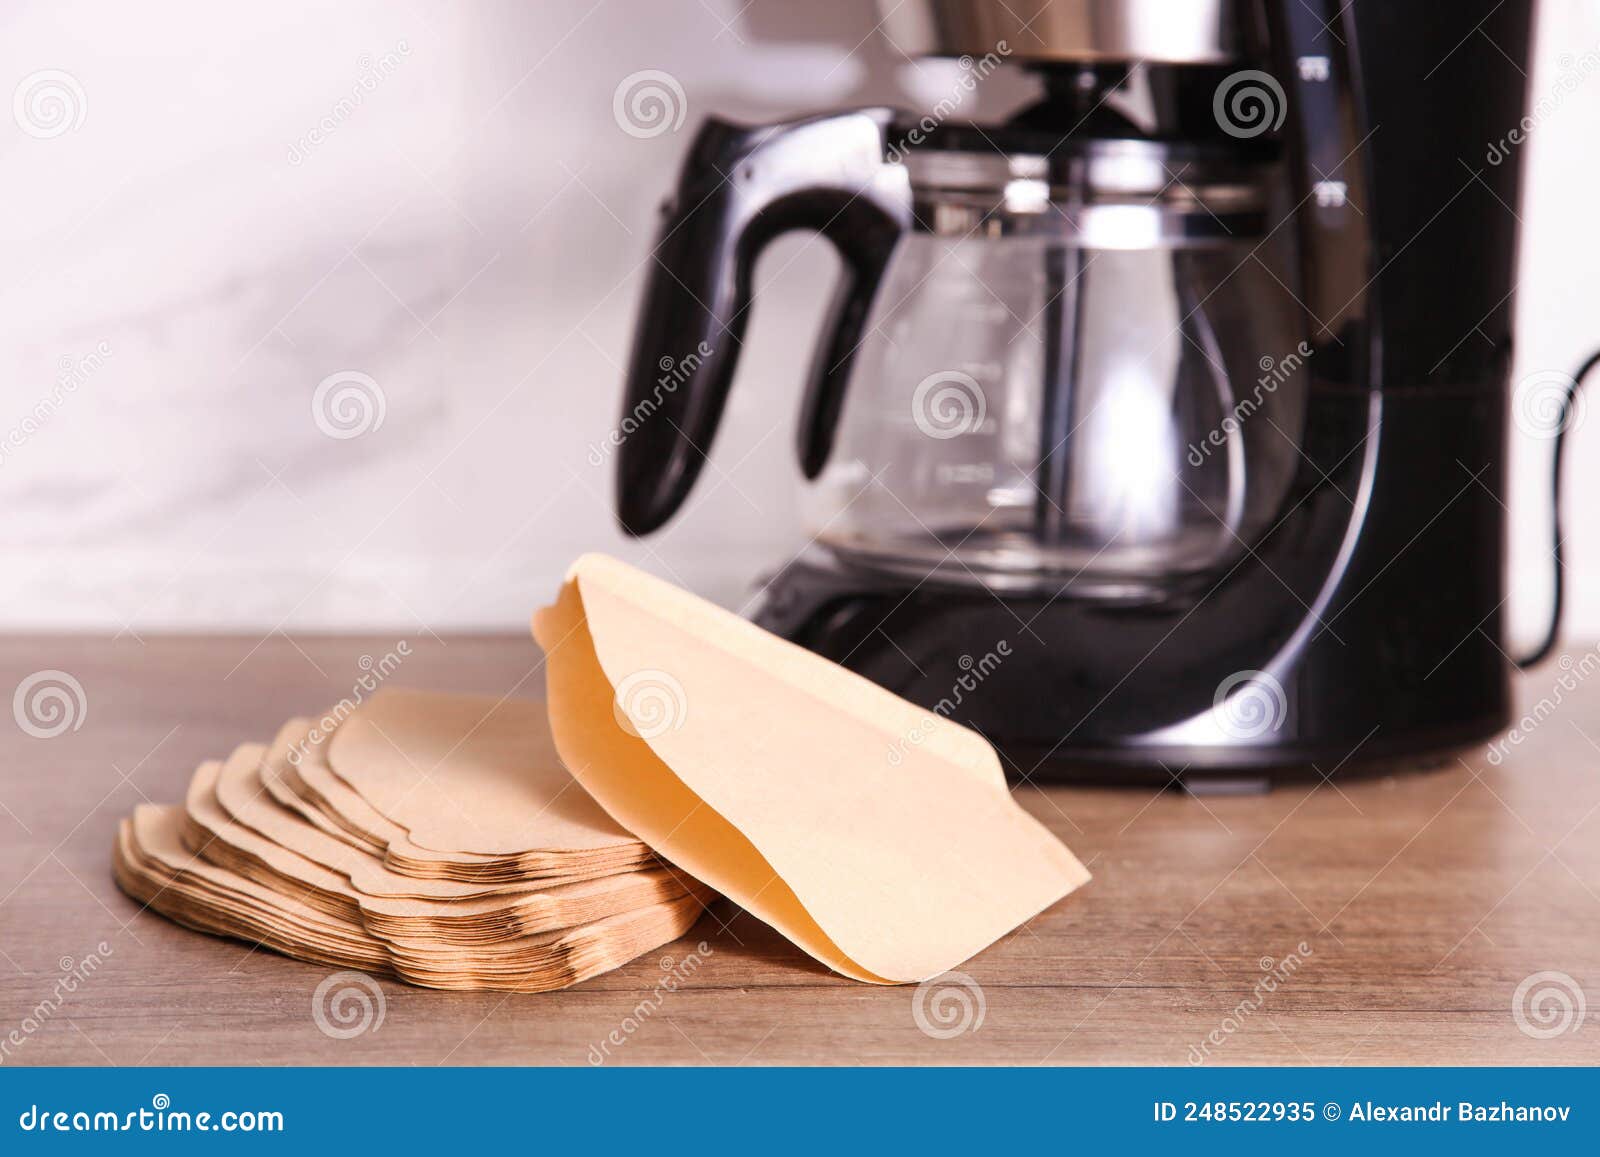 Filtros De Papel Desechables Para Cafetera Por Goteo Imagen de archivo -  Imagen de aplicaciones, cocina: 248522935